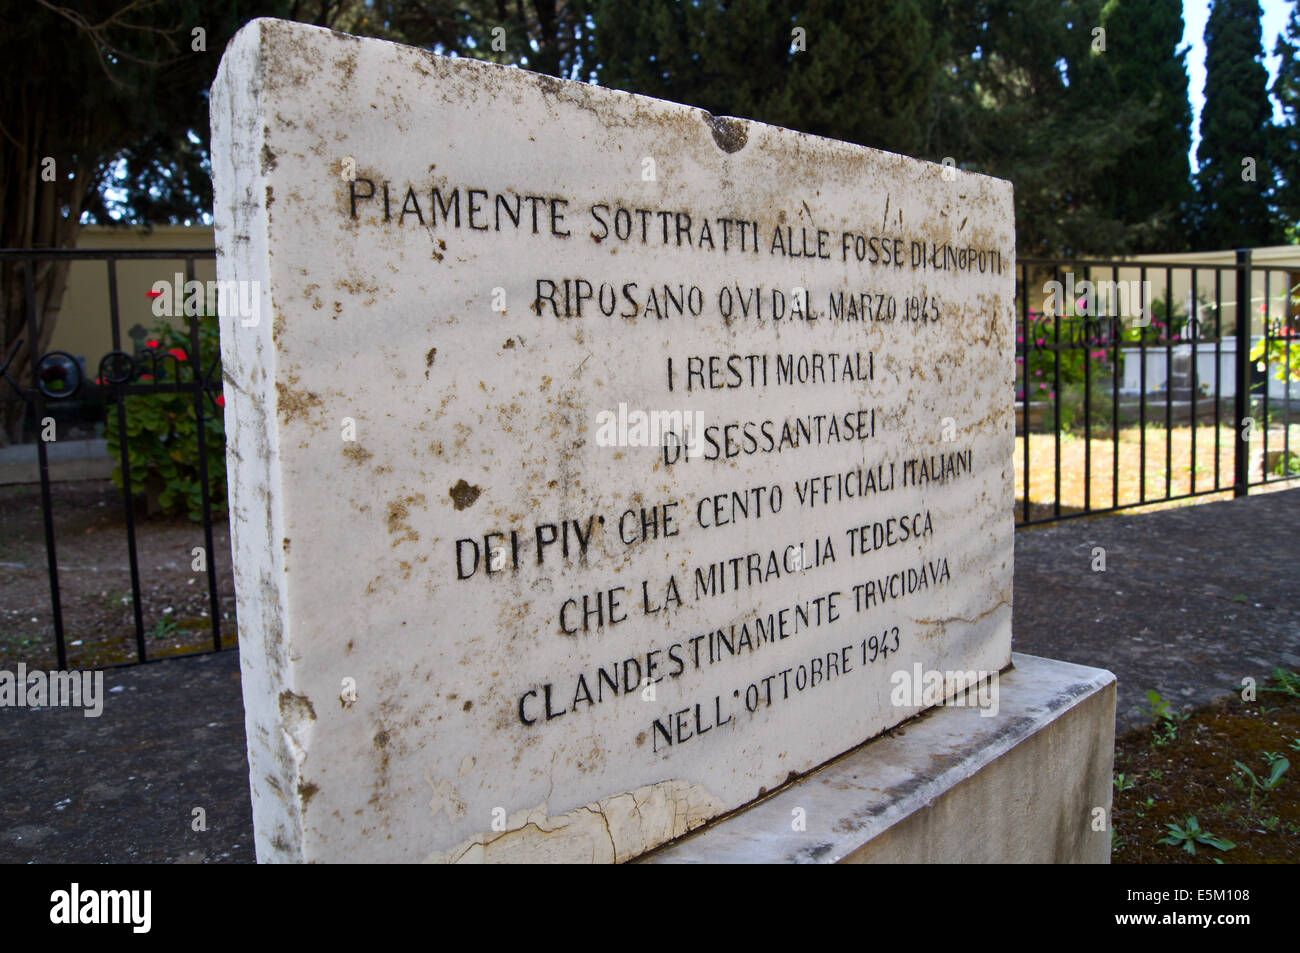 Memoriale al Linopoti massacro di soldati italiani dalle forze armate tedesche, 1943, cimitero cattolico, Kos, Grecia Foto Stock